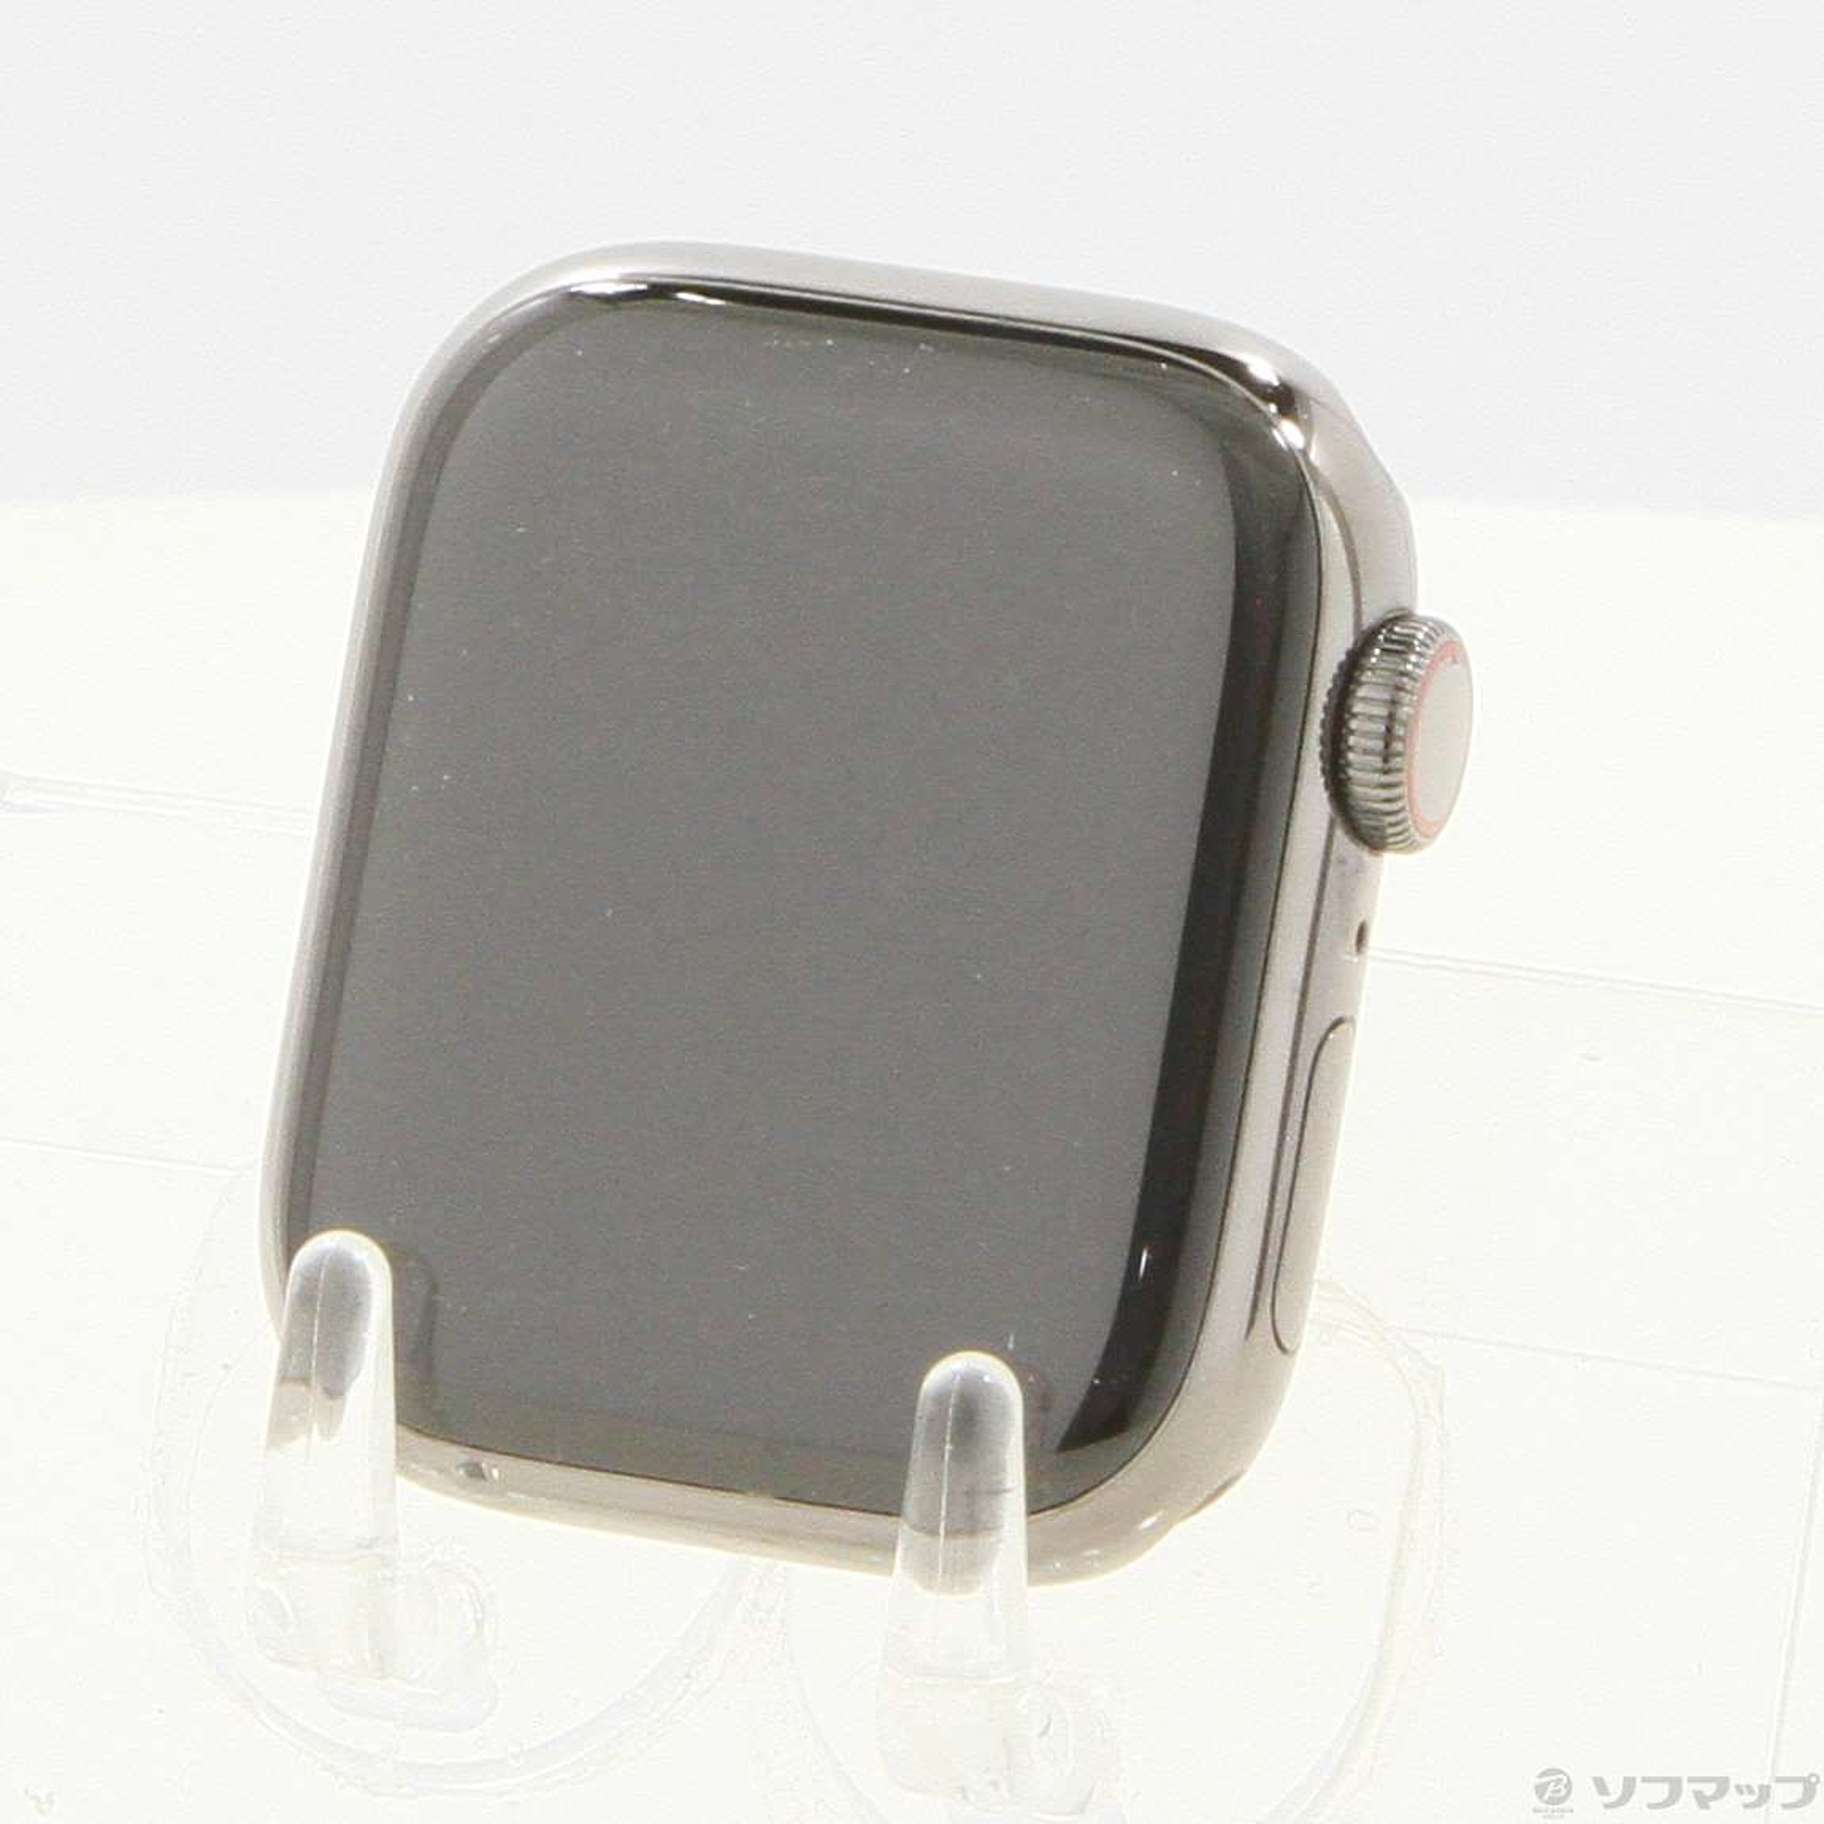 中古】Apple Watch Series 7 GPS + Cellular 41mm グラファイト